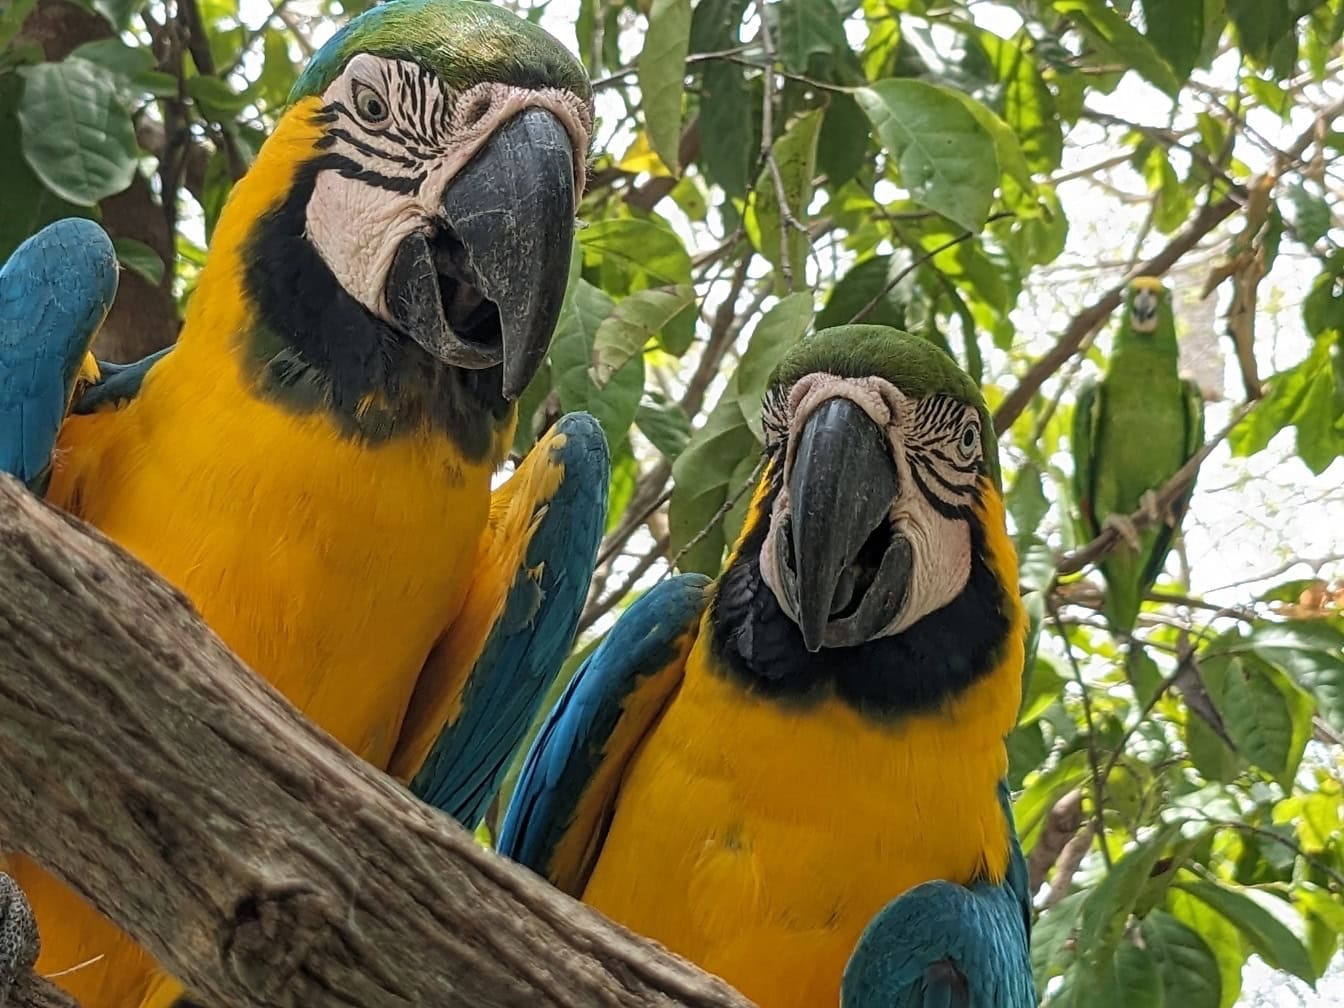 Fargerik blå-og-gul macaw fugl (Ara ararauna) også kjent som blå-og-gull papegøye